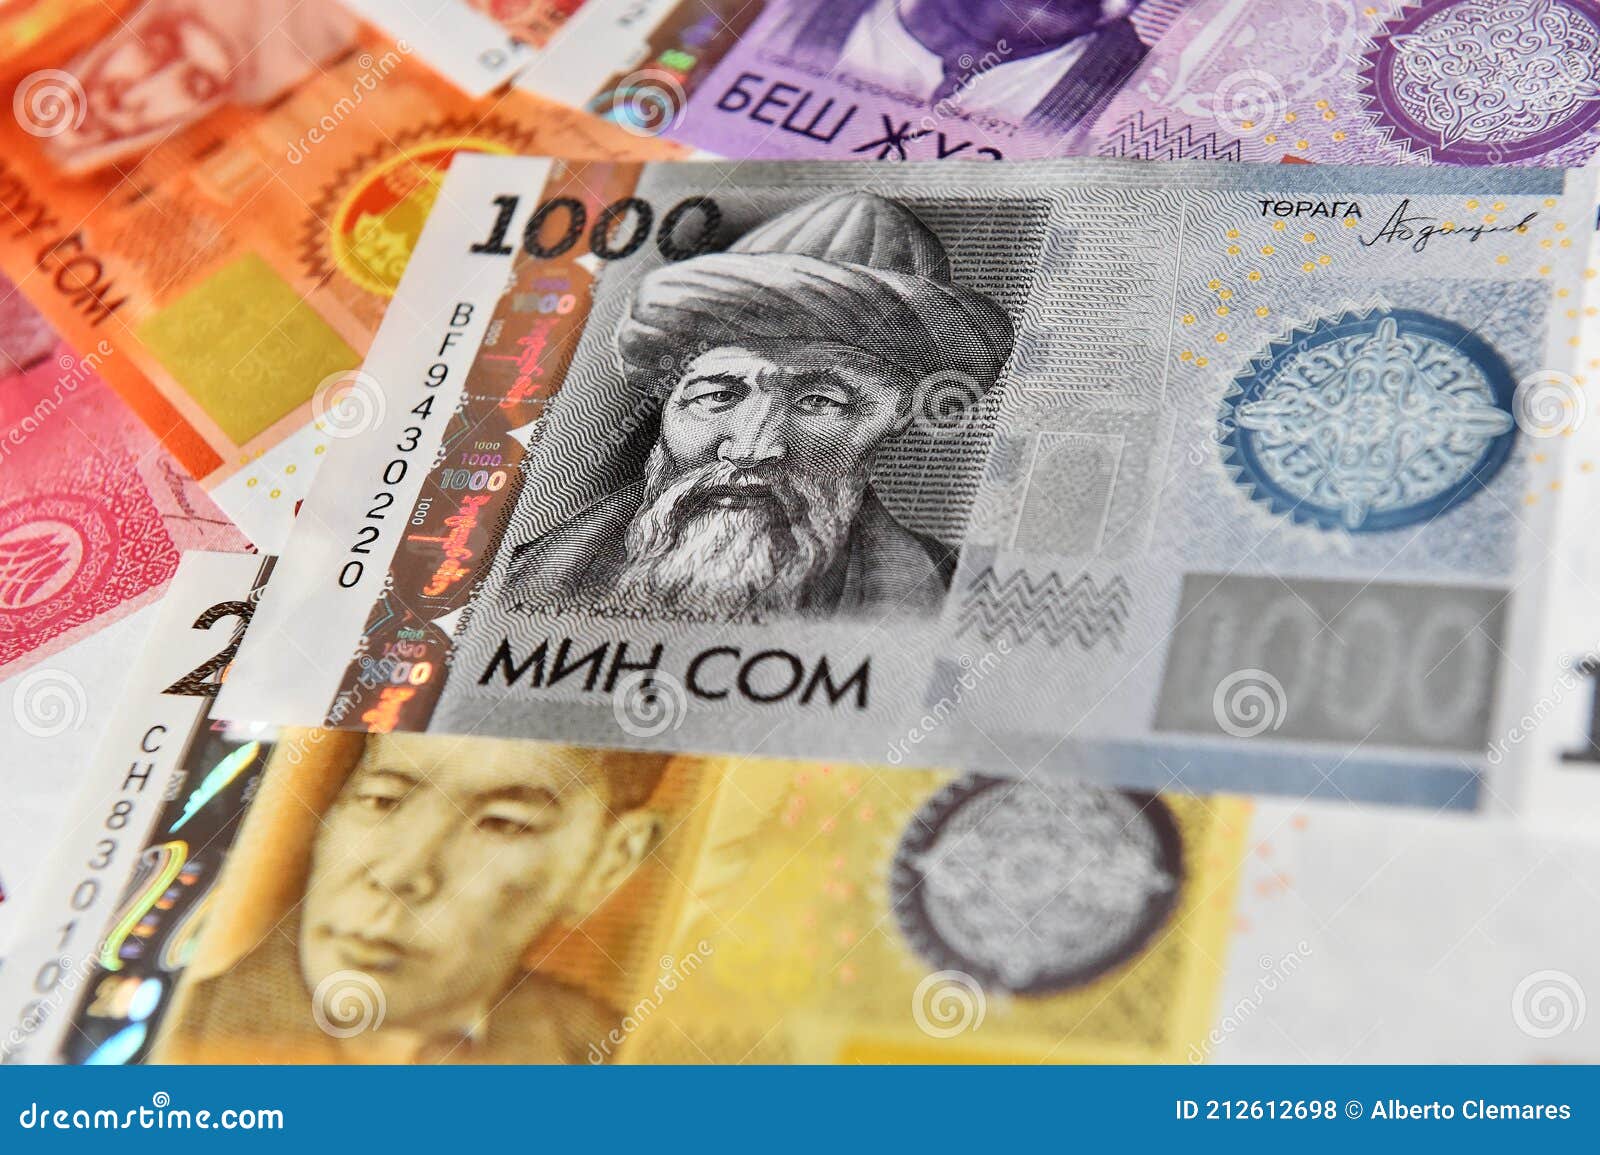 a  current money of kirguistan